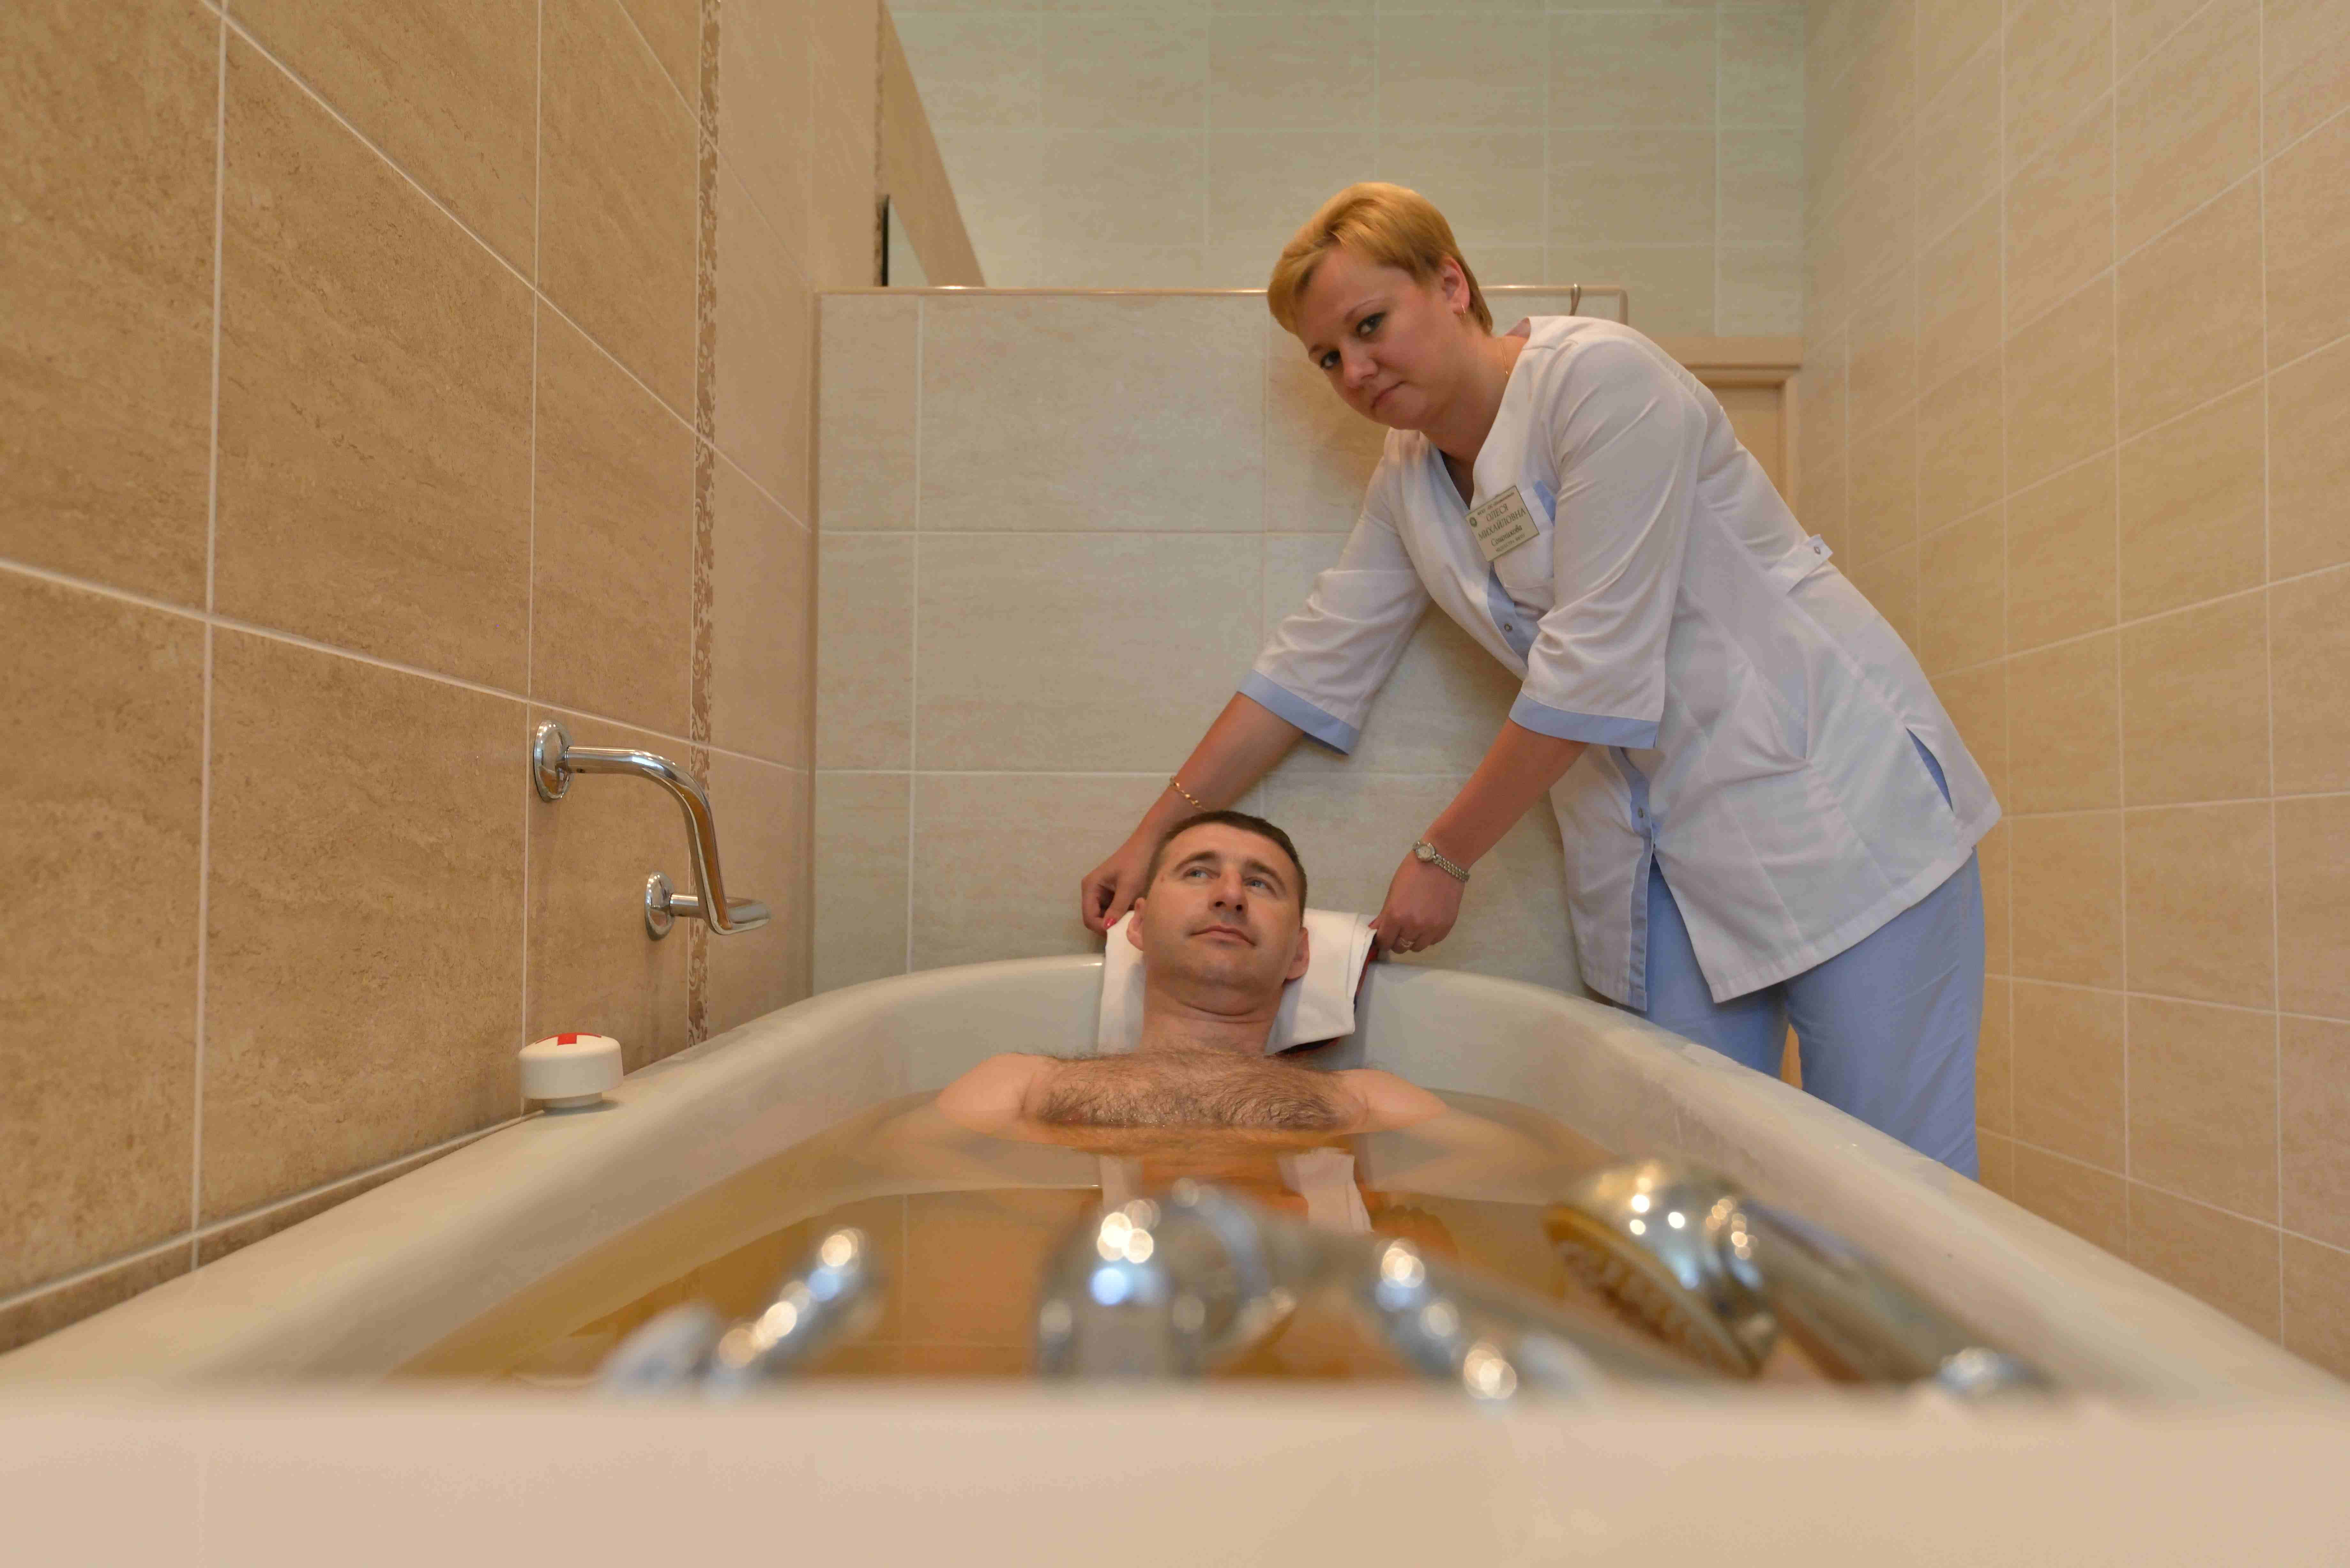 Радоновые ванны это. Радонотерапия Радон. Радоновые ванны в санатории зори Ставрополья. Санаторий с радоновыми ваннами в Подмосковье. Общие лечебные ванны.